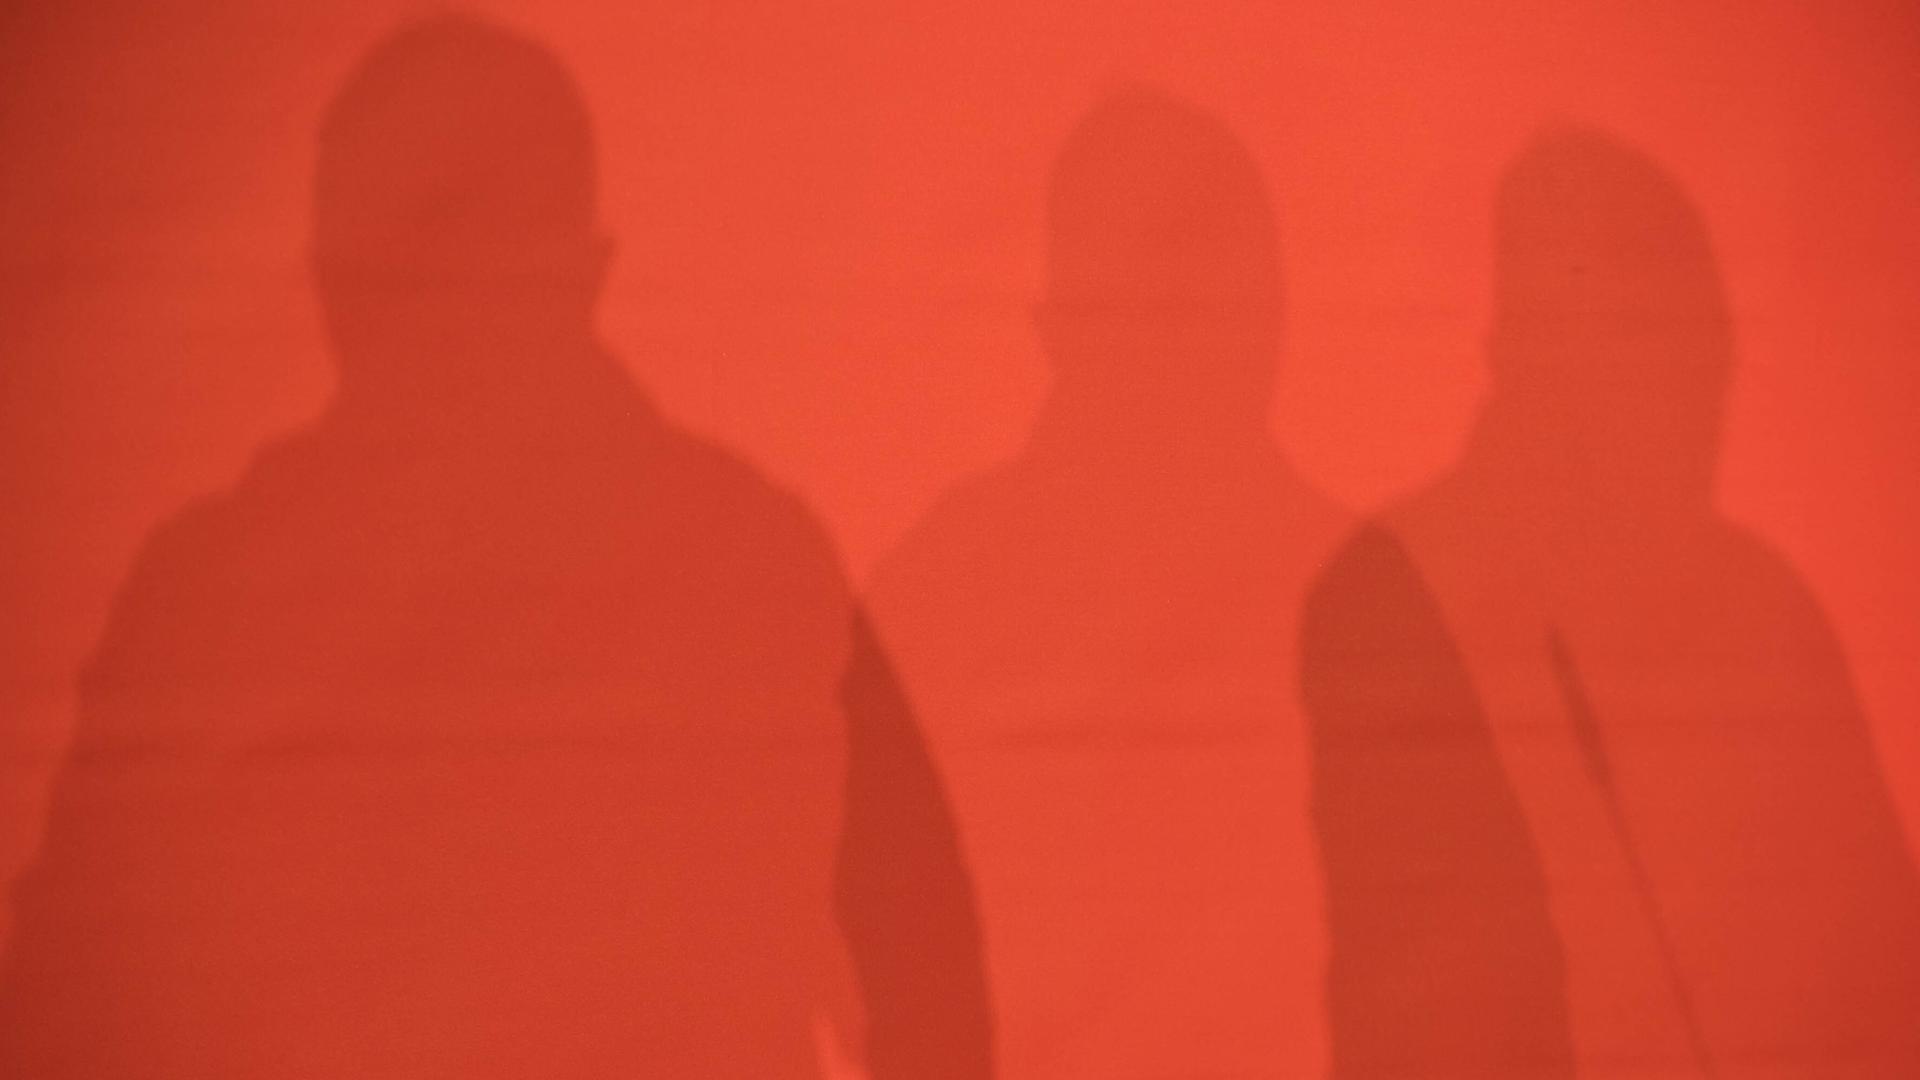 Schatten von drei Personen auf einer roten Wand. Landesparteitag der Partei Die Linke in Berlin.